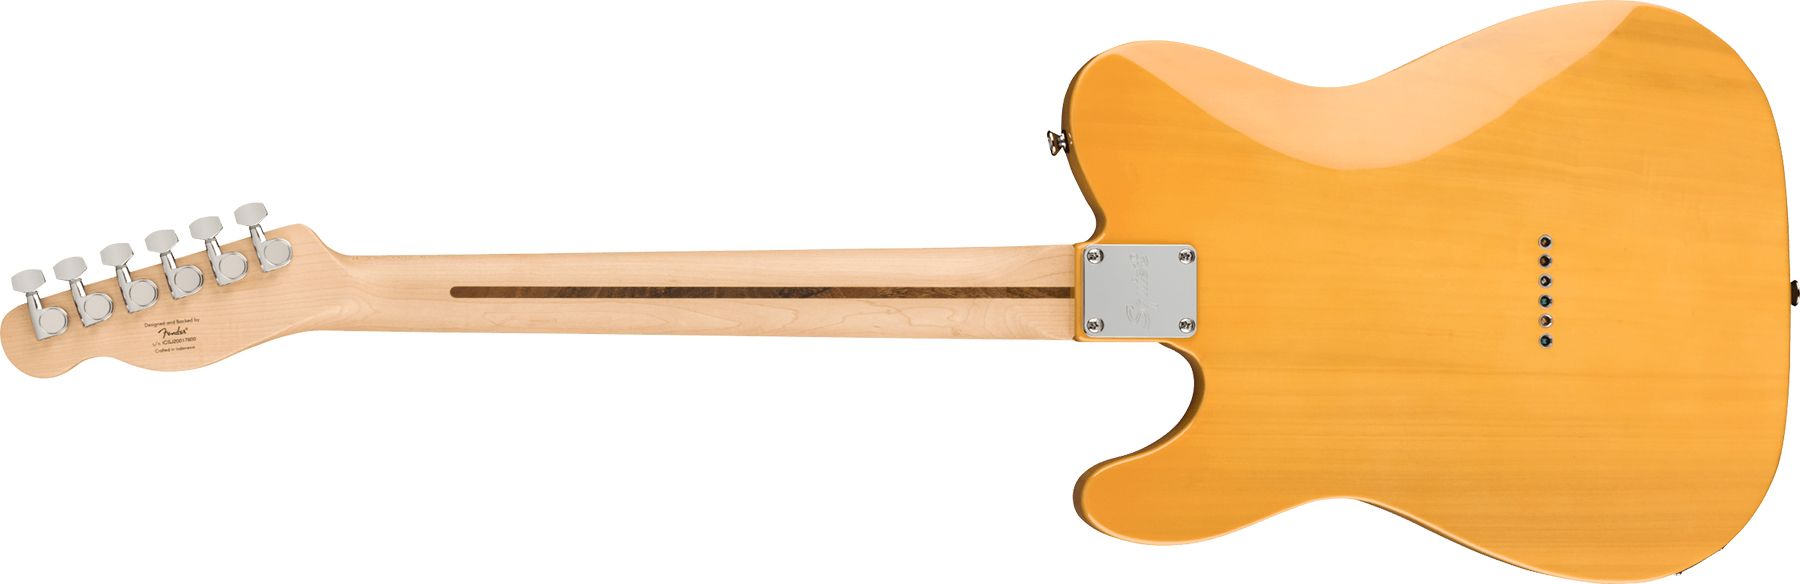 Squier Tele Affinity 2021 2s Mn - Butterscotch Blonde - Televorm elektrische gitaar - Variation 1